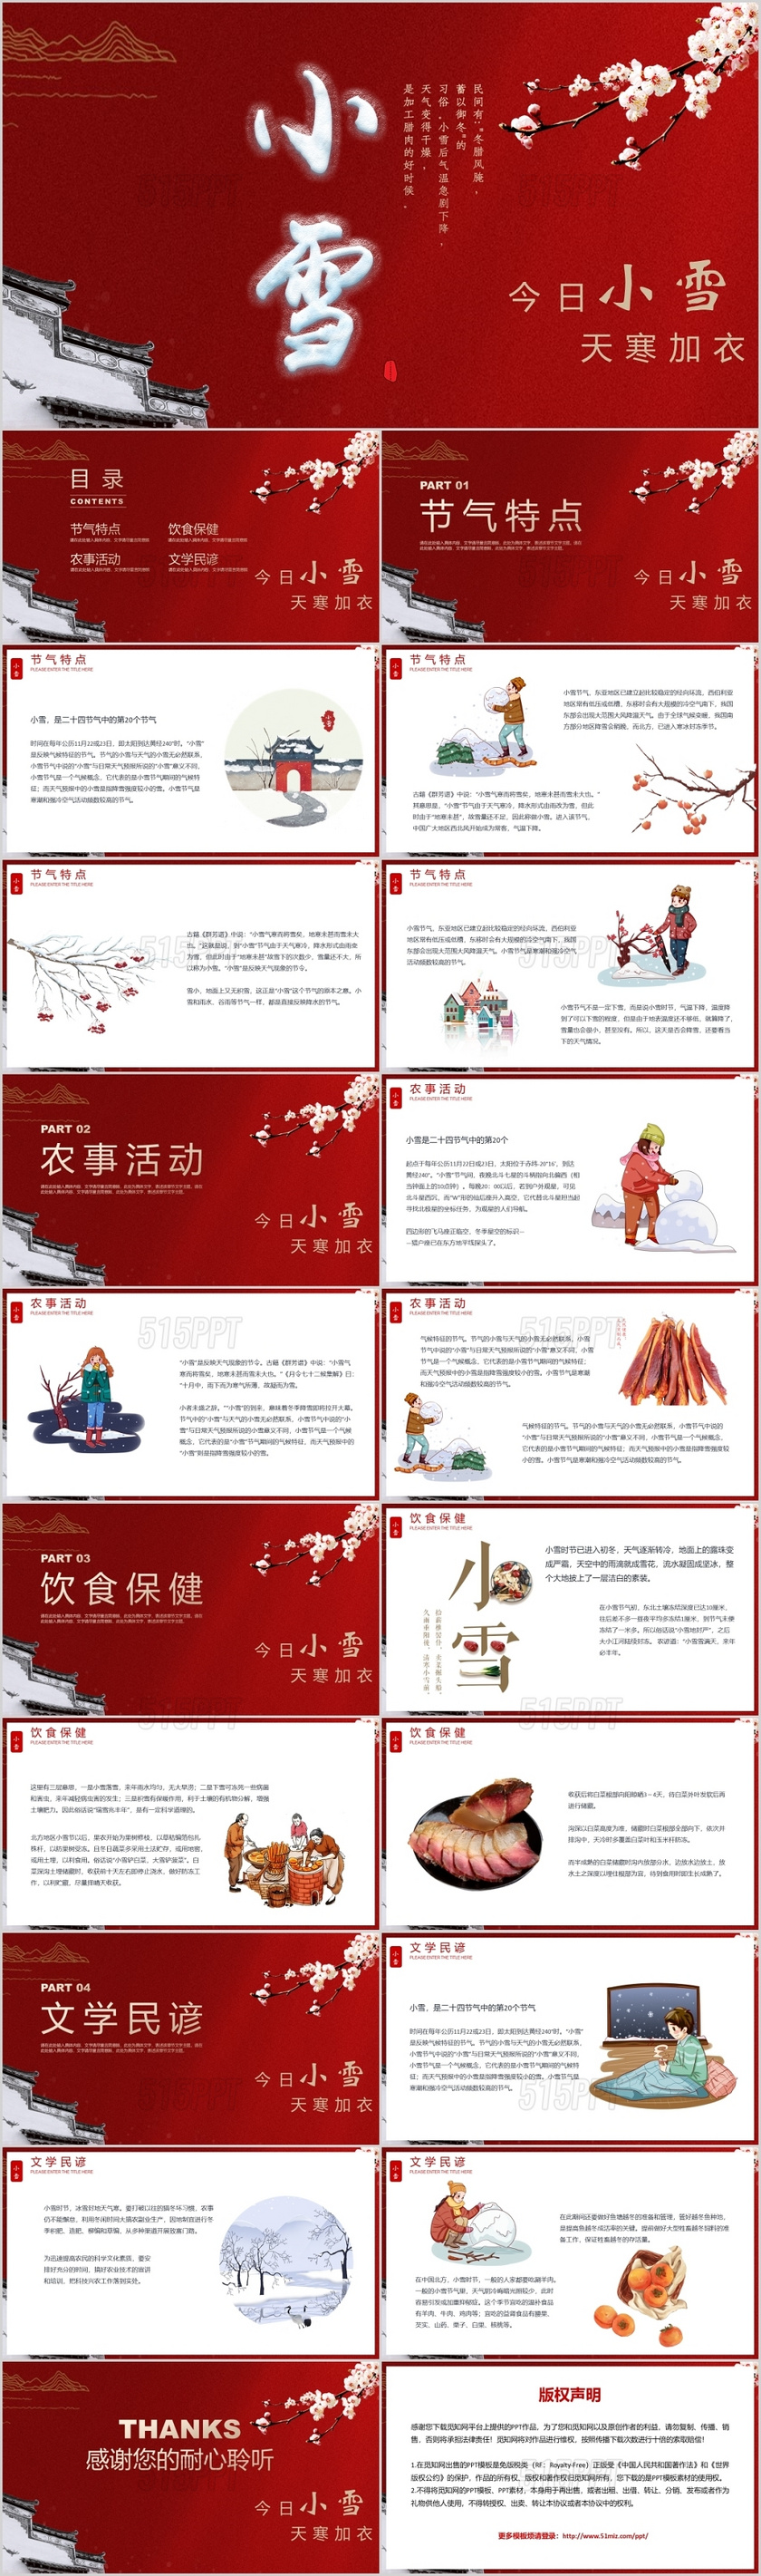 红色系卡通人物风格二十四节气之小雪节气介绍PPT模板